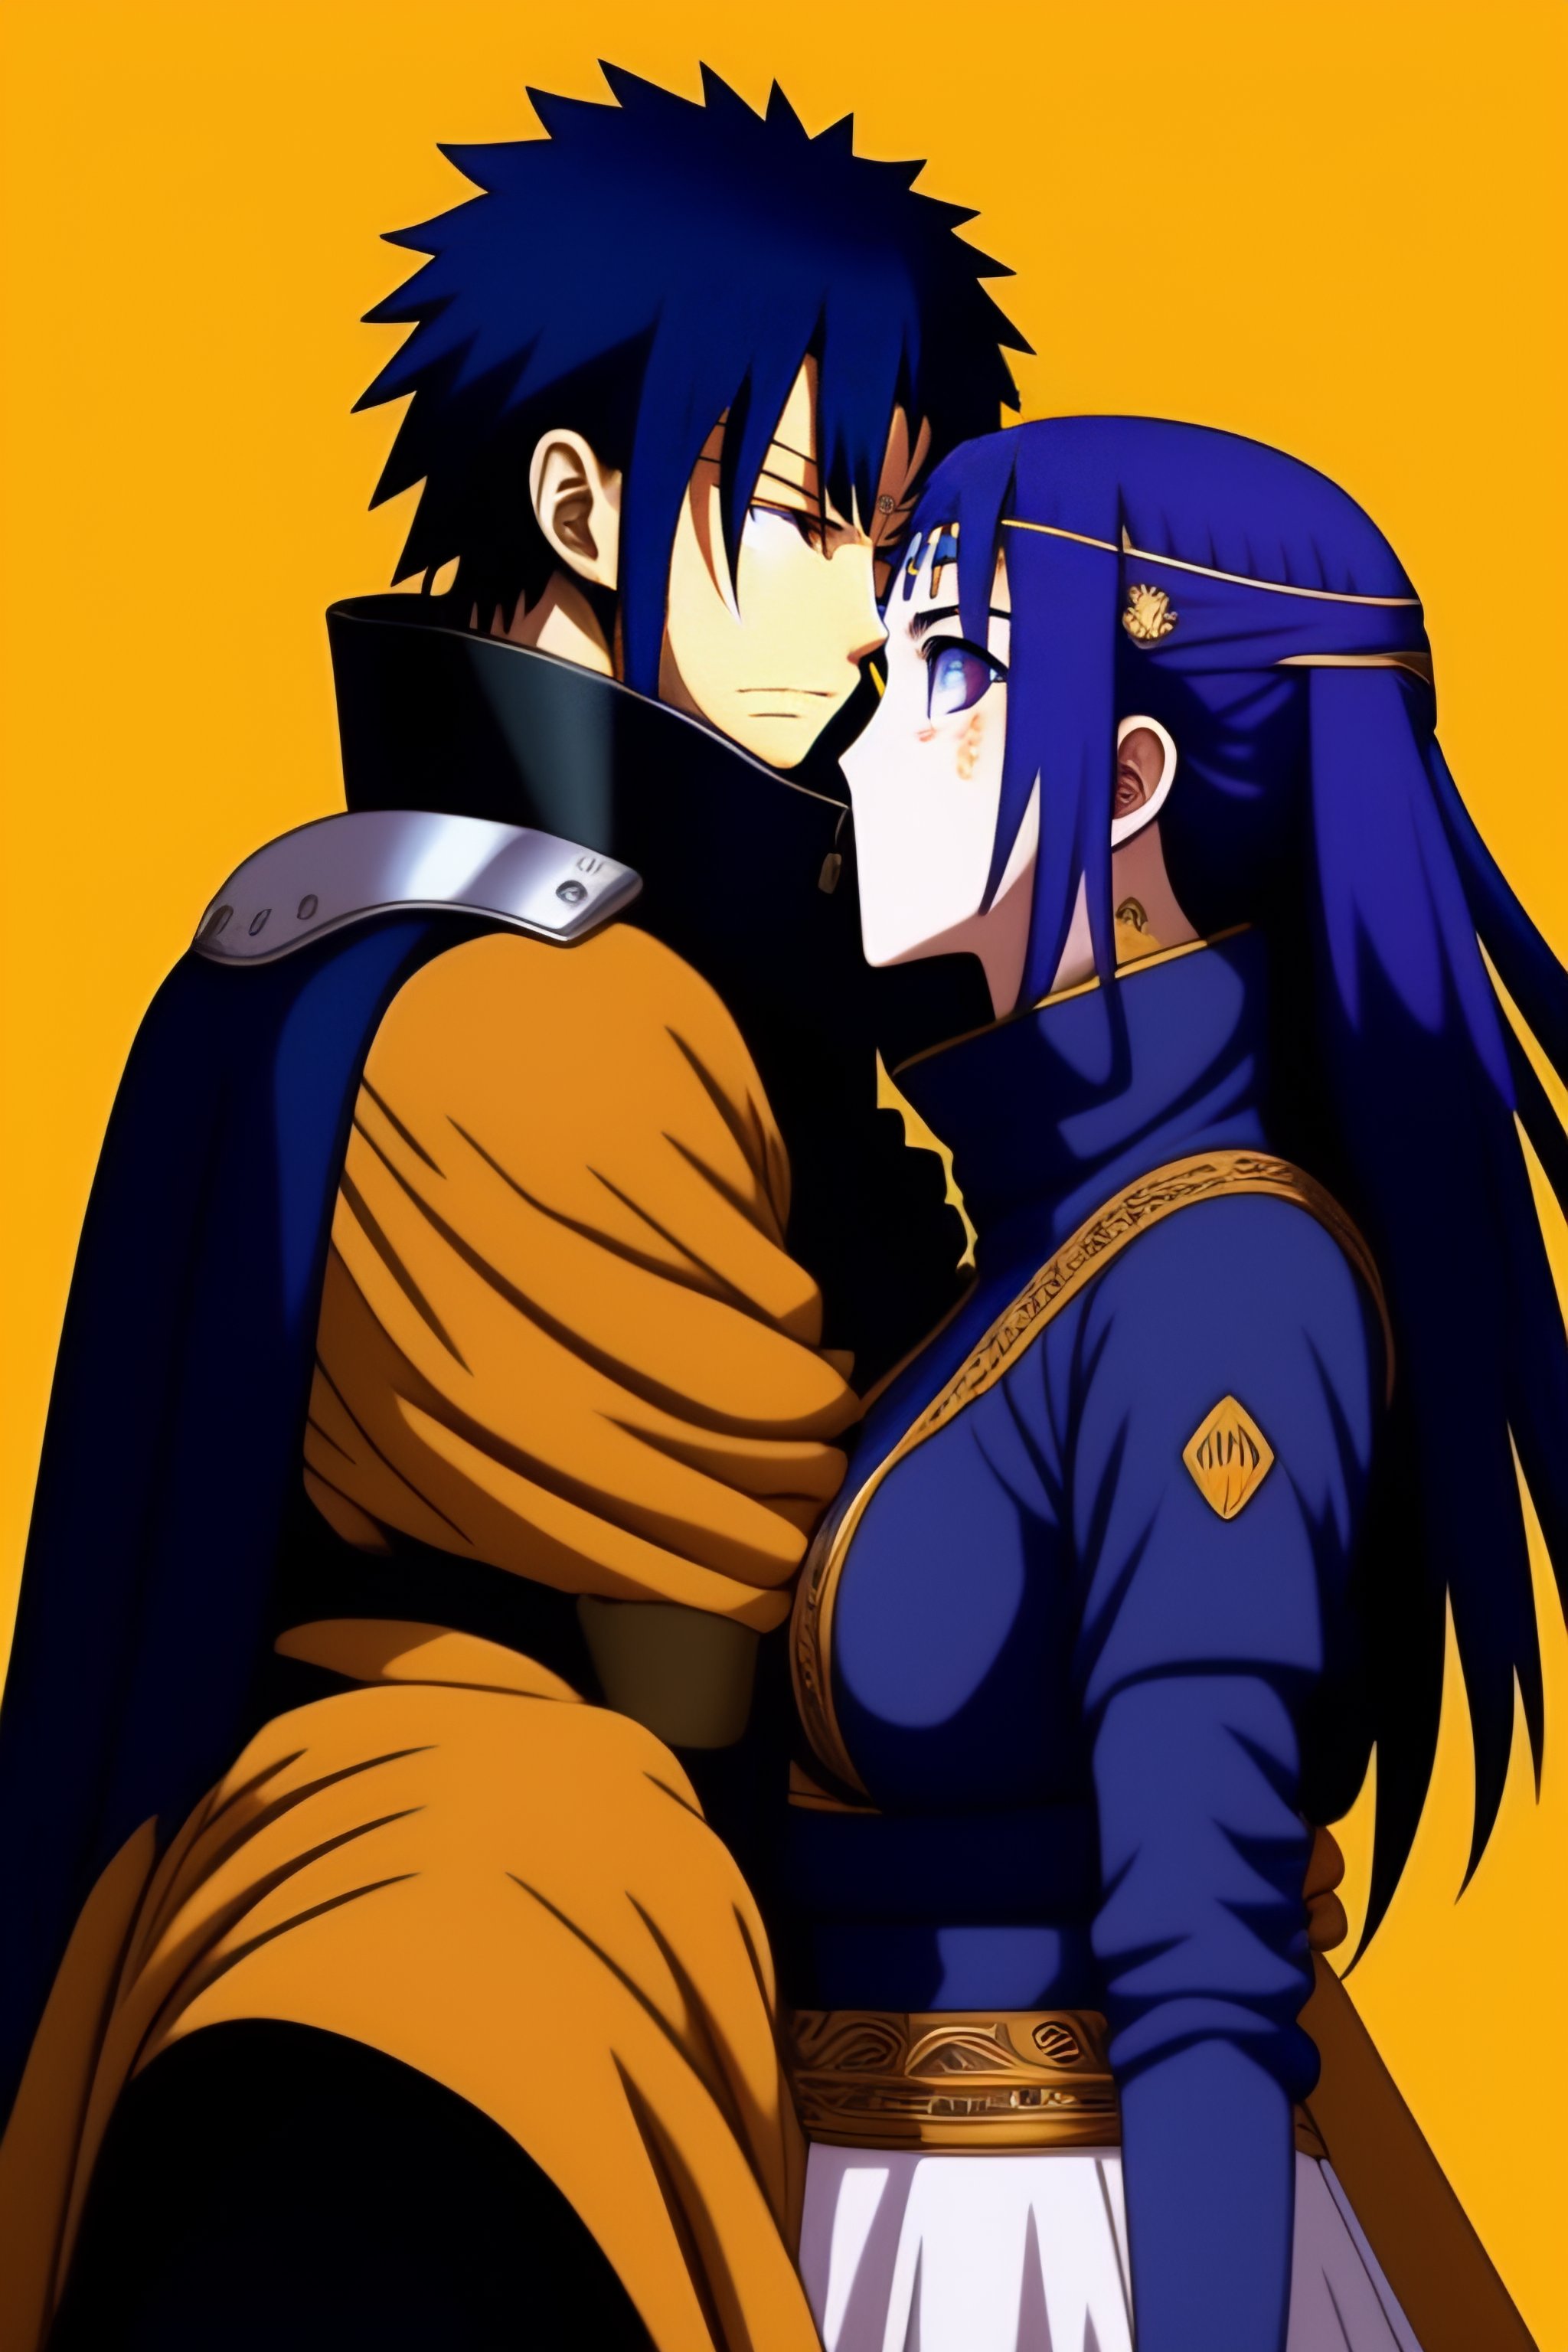 hinata and sasuke love